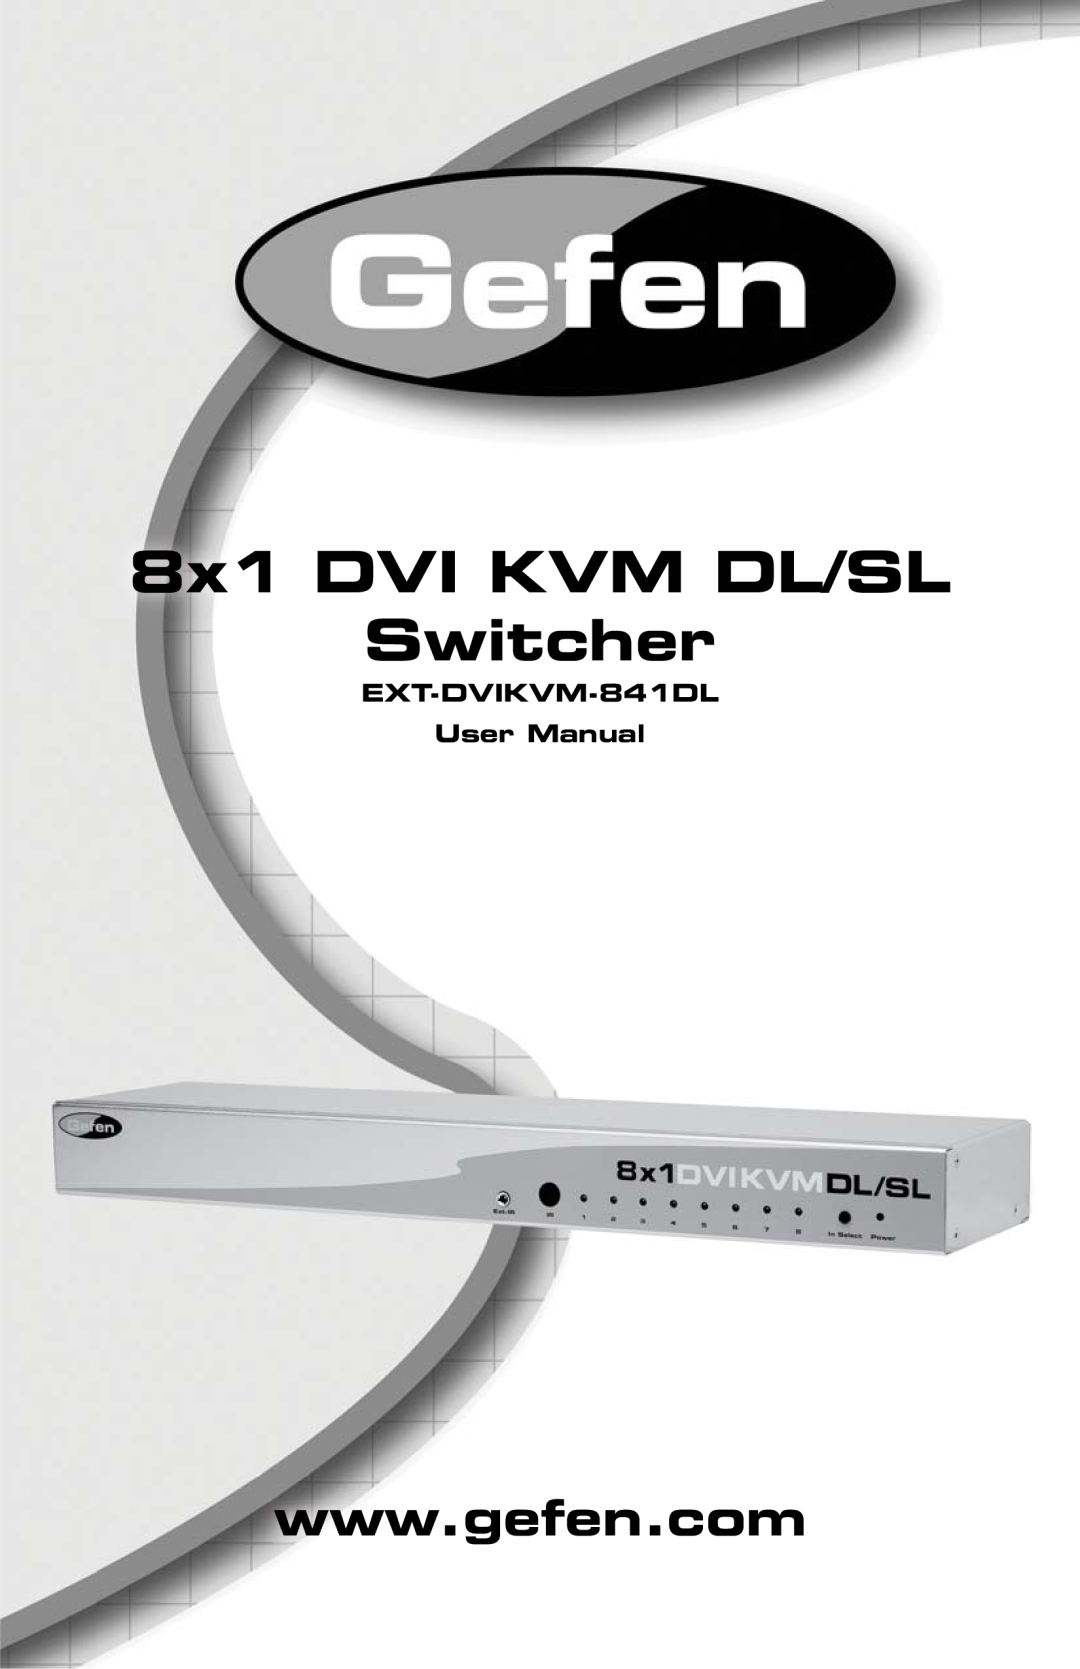 Gefen user manual EXT-DVIKVM-841DL User Manual, 8x1 DVI KVM DL/SL Switcher 